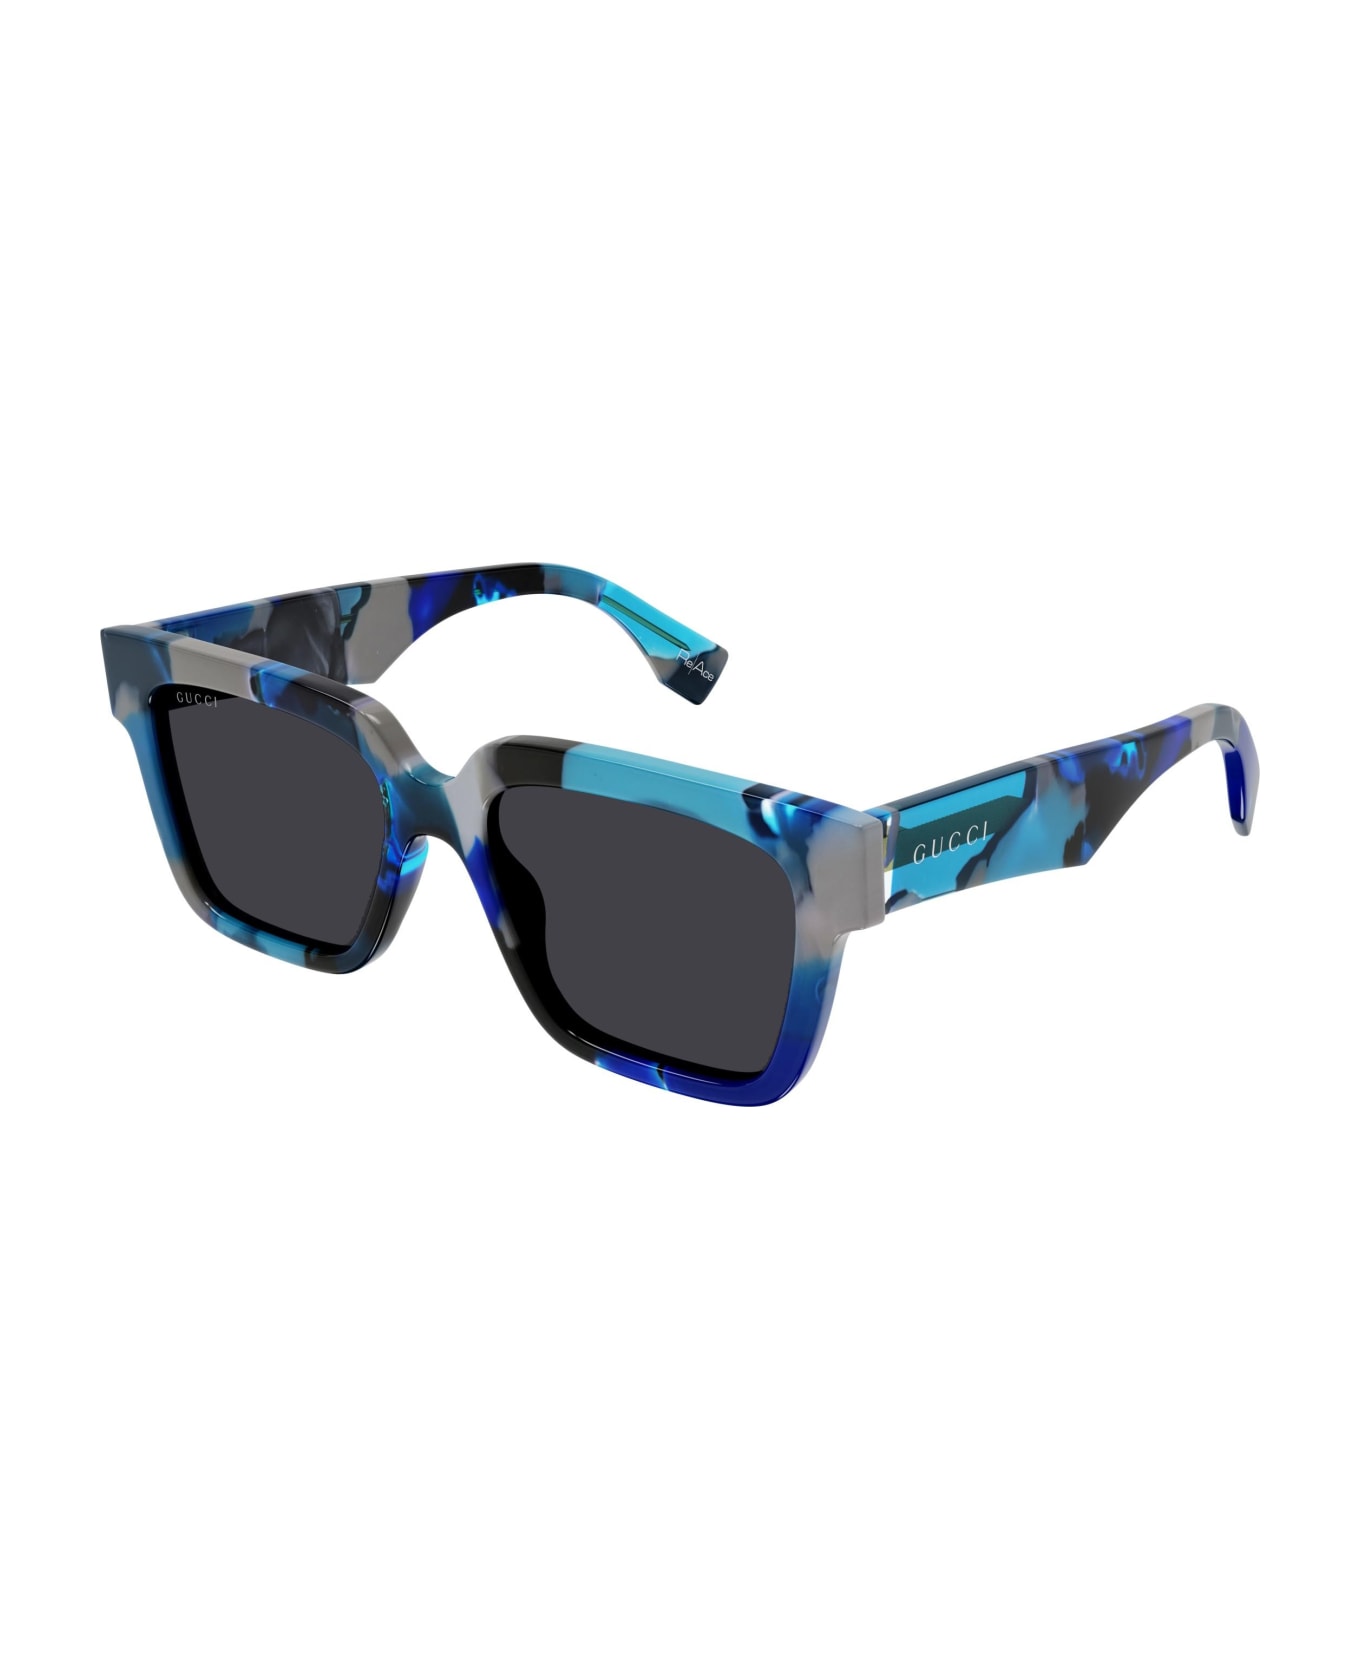 Gucci Eyewear Sunglasses - Blu/Grigio サングラス